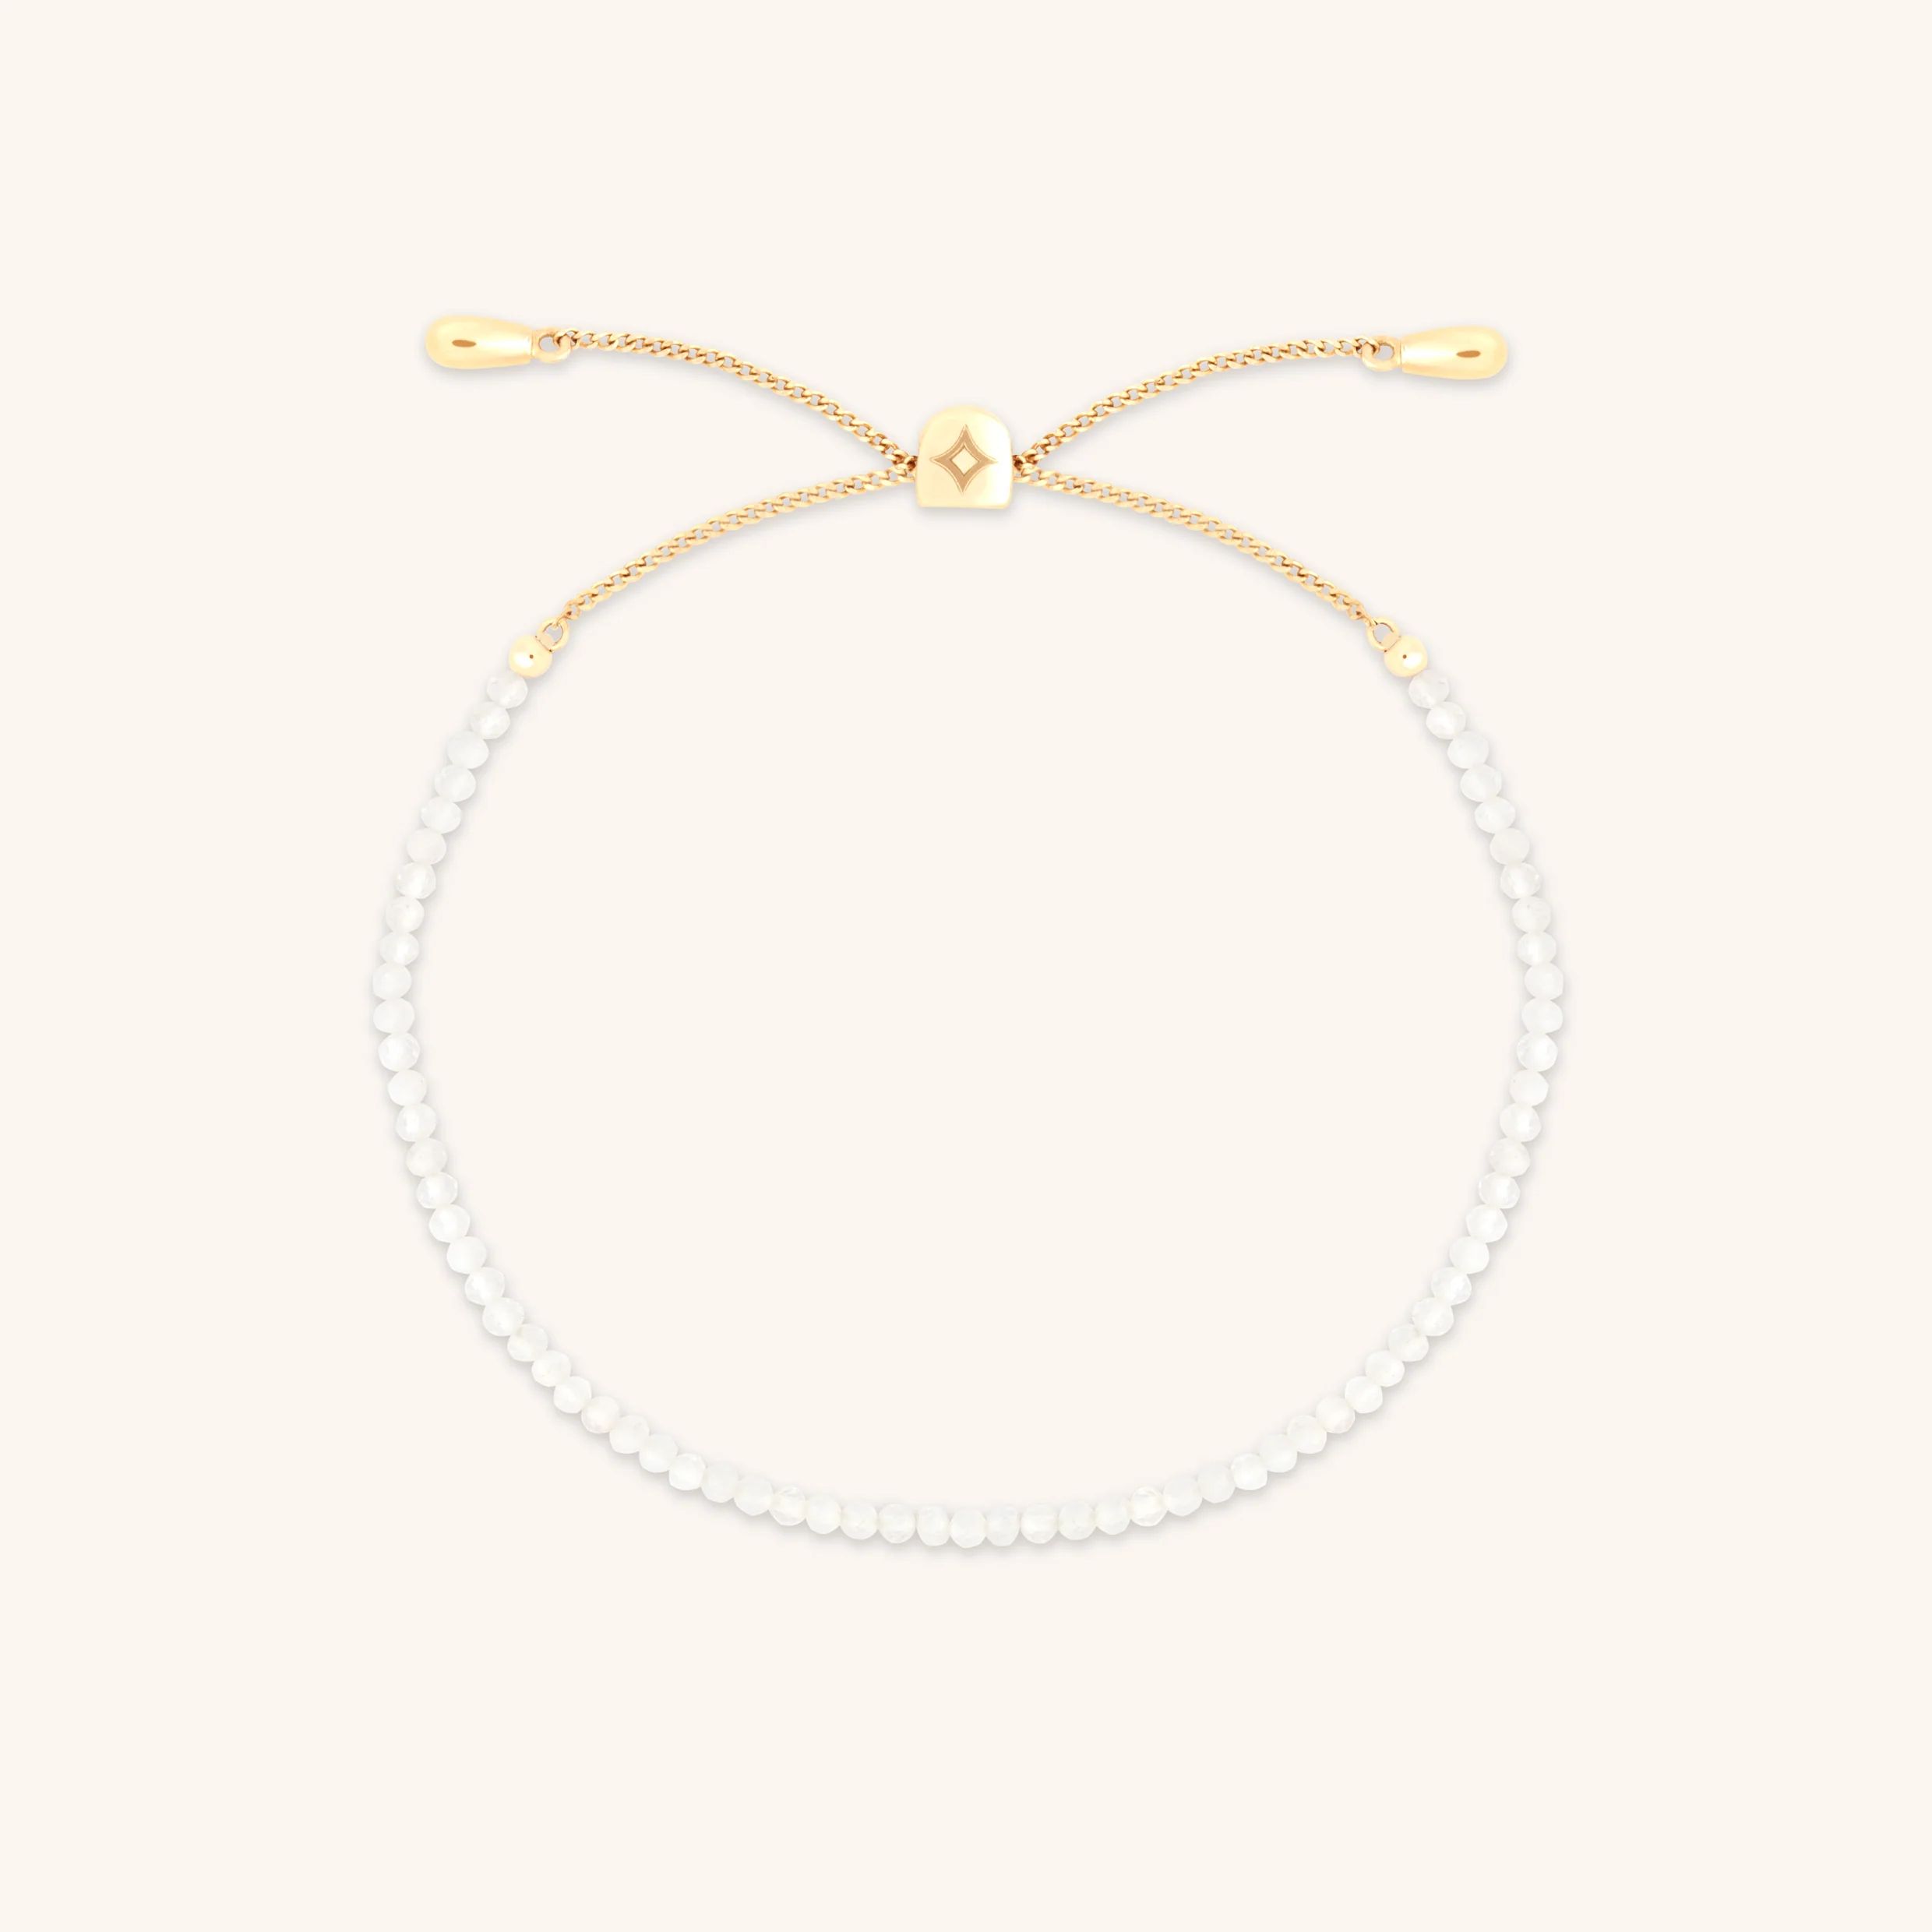 Moonstone Gemstone Bracelet in 9k Gold | Astrid & Miyu EU